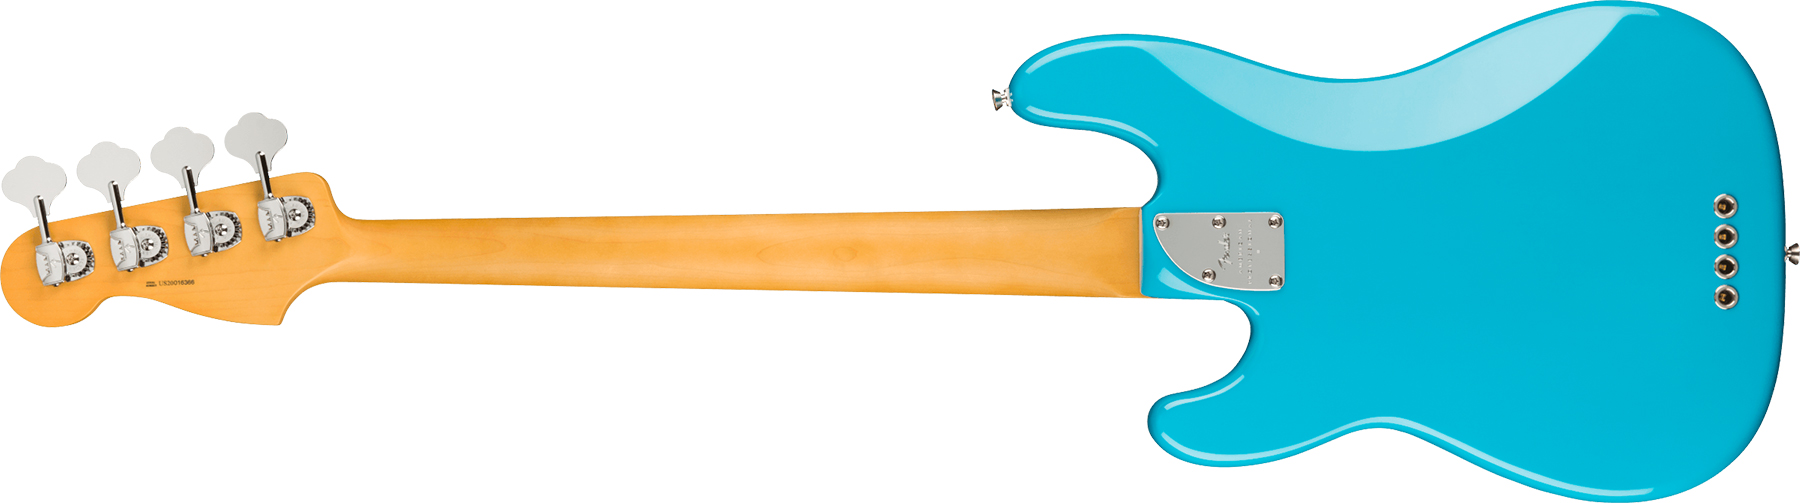 Fender Precision Bass American Professional Ii Usa Mn - Miami Blue - Bajo eléctrico de cuerpo sólido - Variation 1